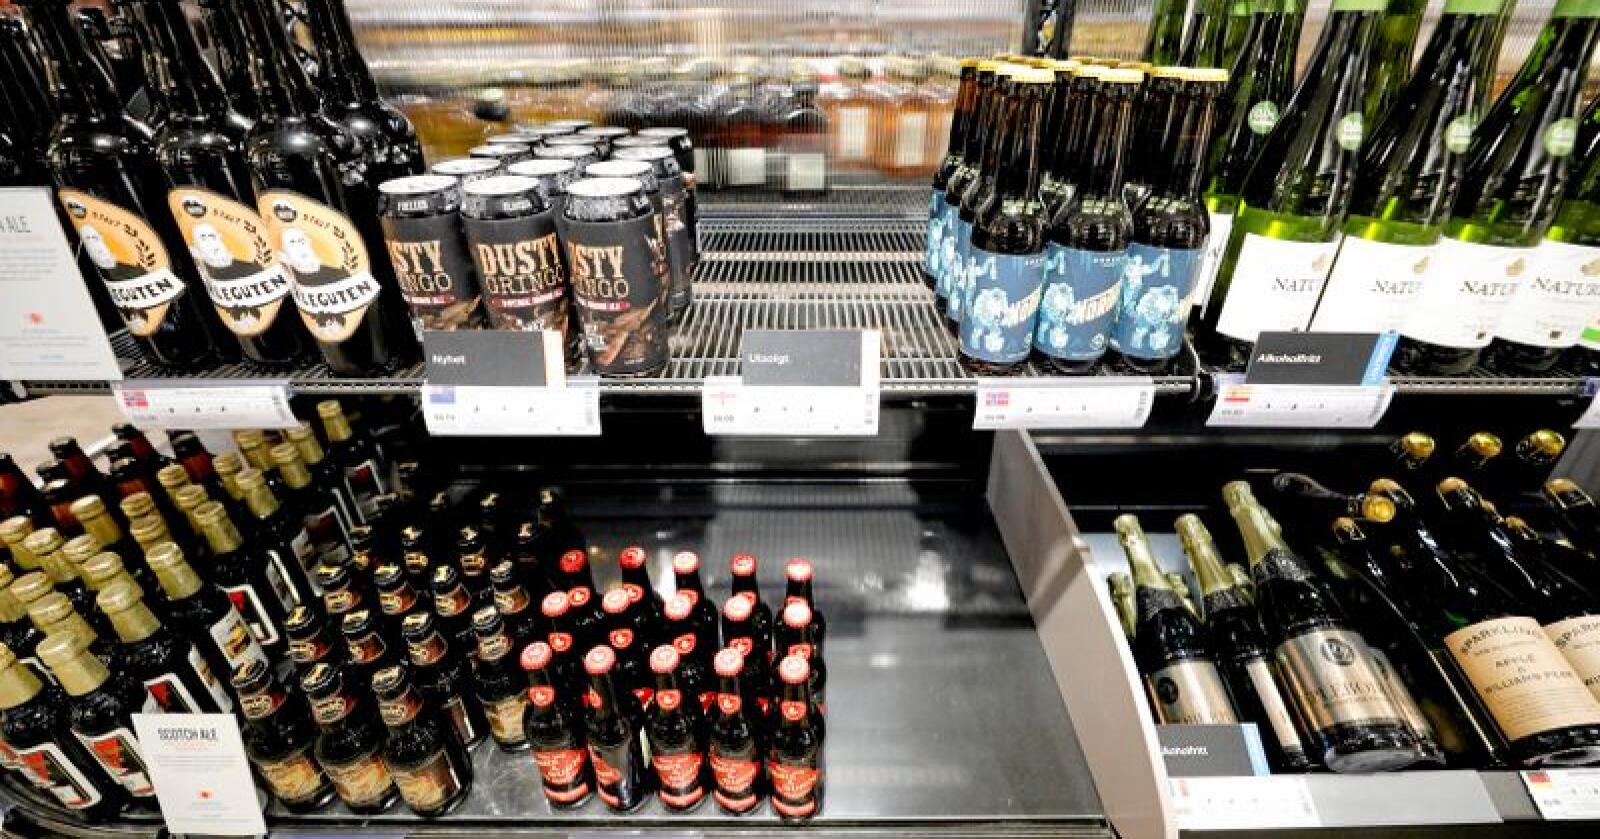 Salget av alkoholfrie varer hos Vinmonopolet har økt betraktelig. Hos Vinmonopolet på Oslo S er flere av produktene utsolgt.
Foto: Fredrik Hagen / NTB scanpix